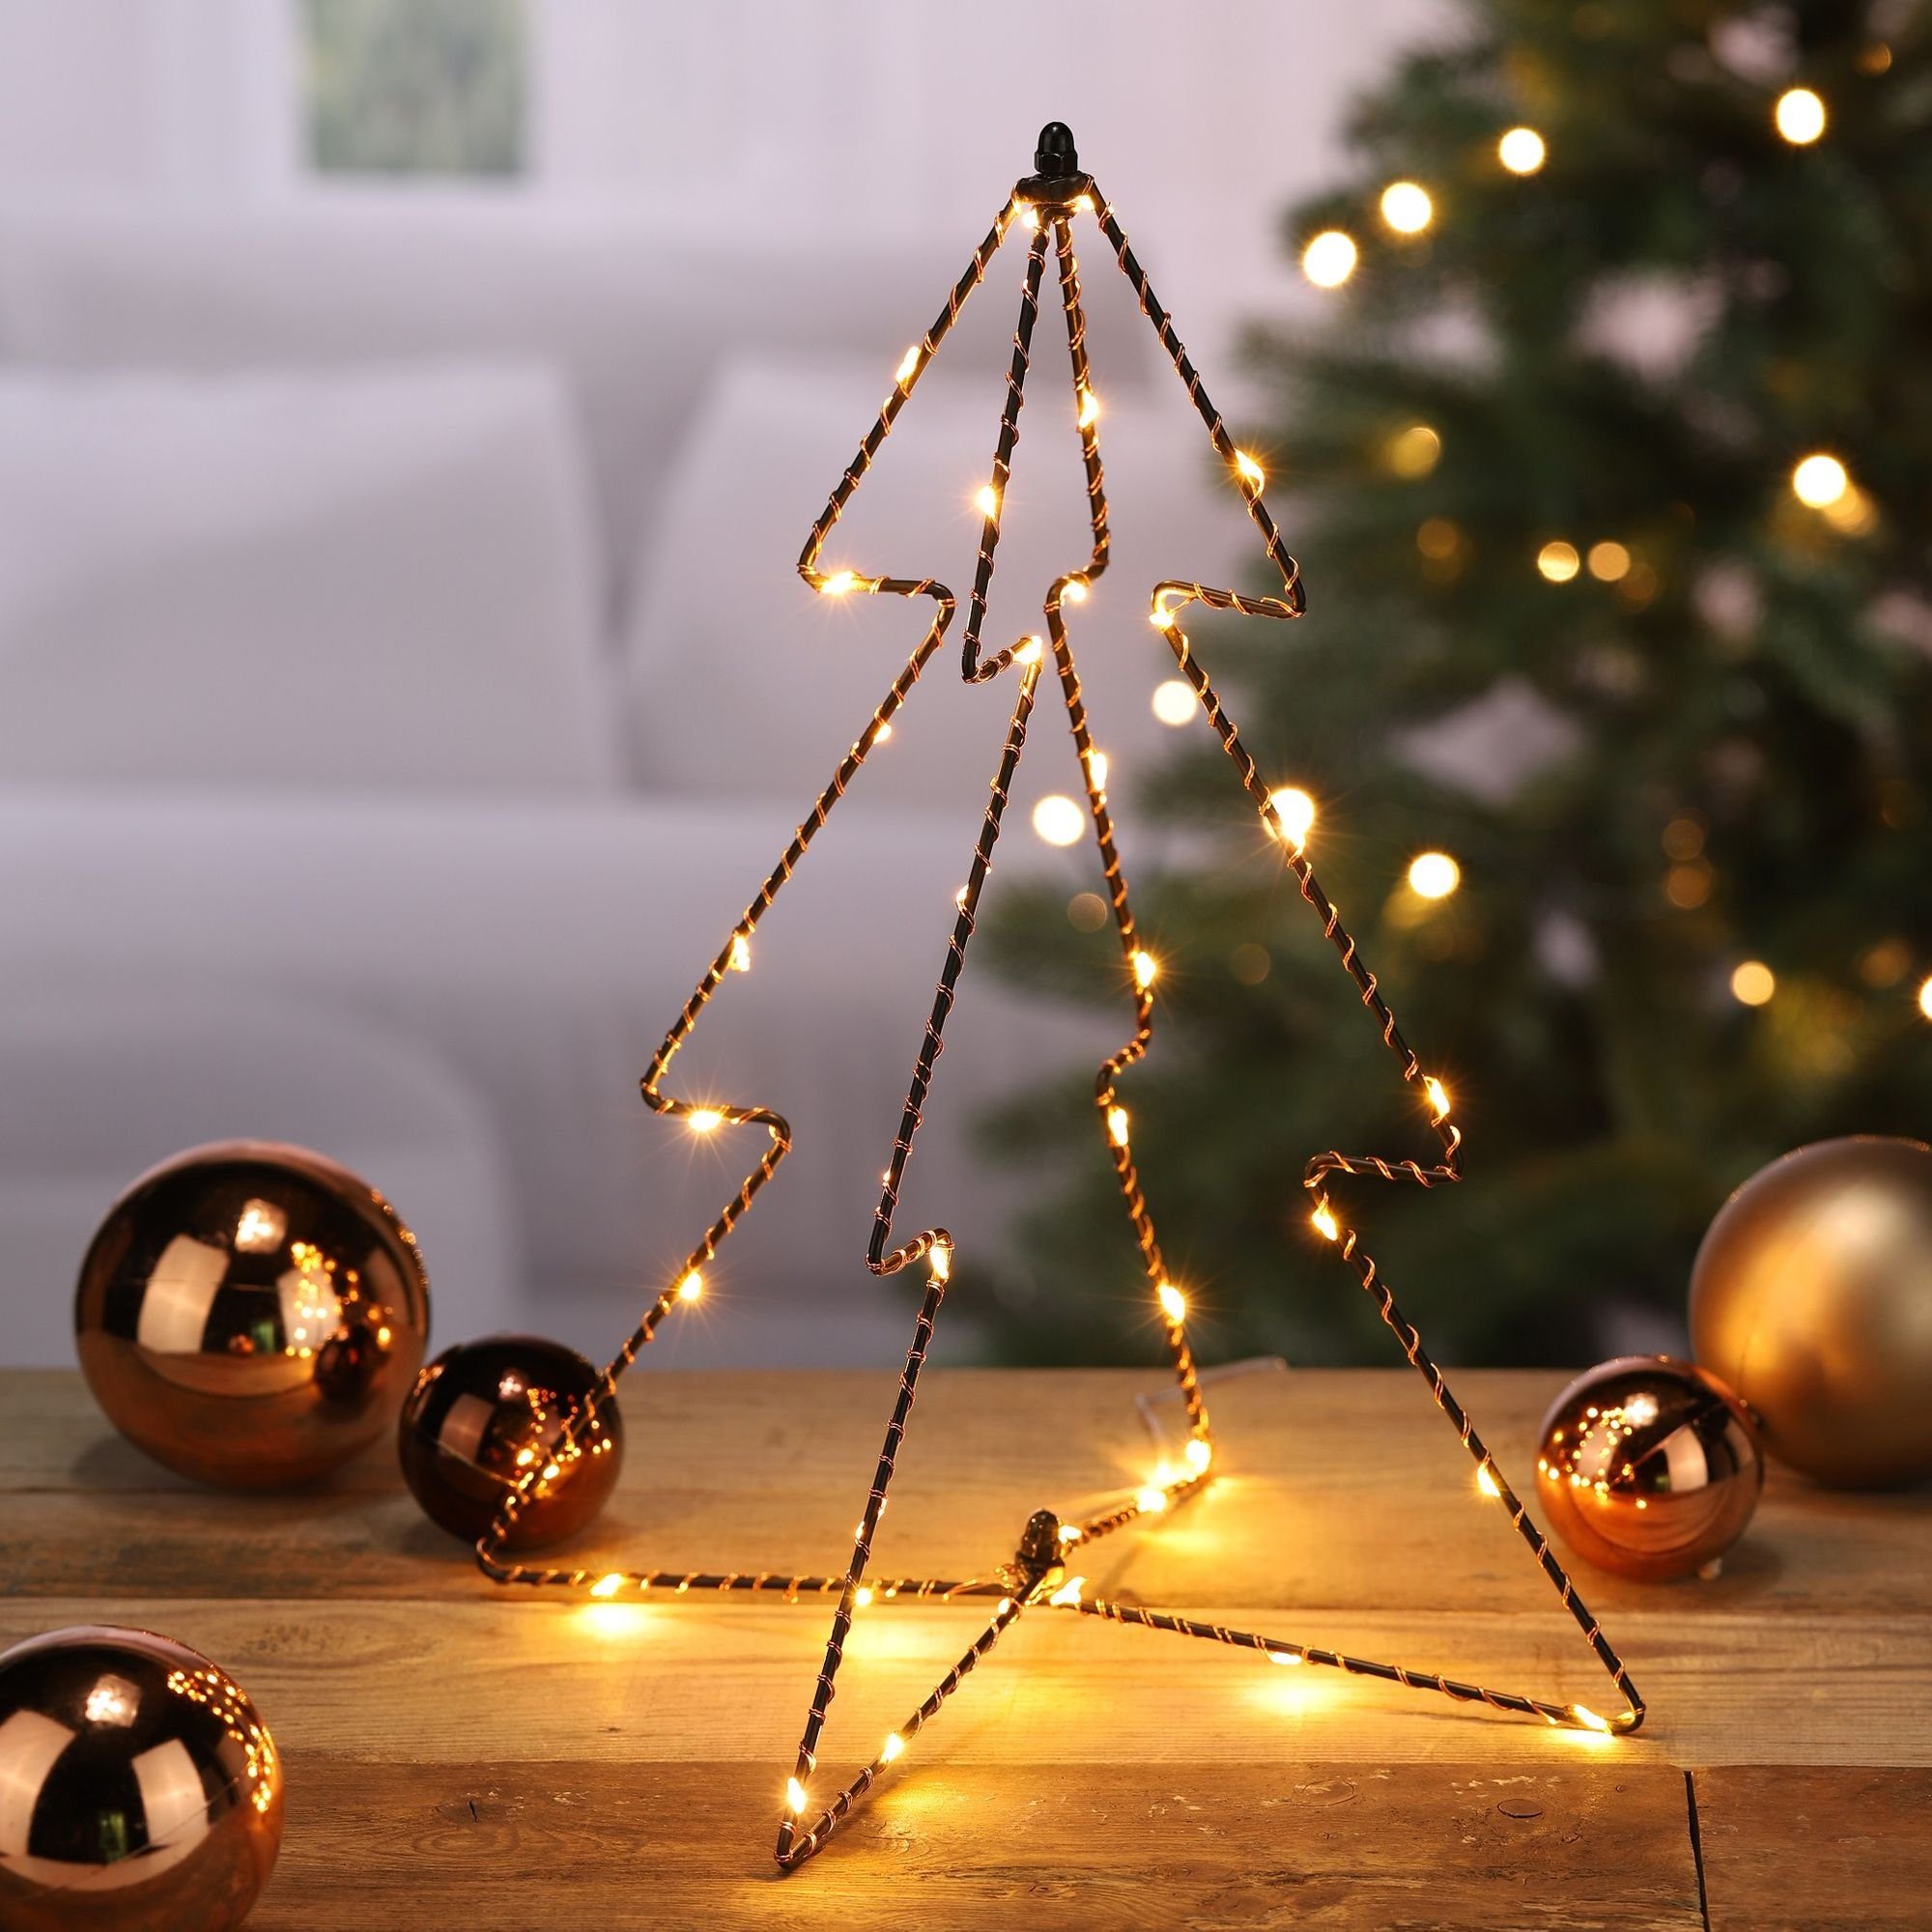 https://i.otto.de/i/otto/aa231a59-8e4a-4277-a9b1-44d59b62b4d6/gartenhero-weihnachtsfigur-led-tannenbaum-lampe-boden-silhouette-weihnachten-weihnachtsbaum.jpg?$formatz$